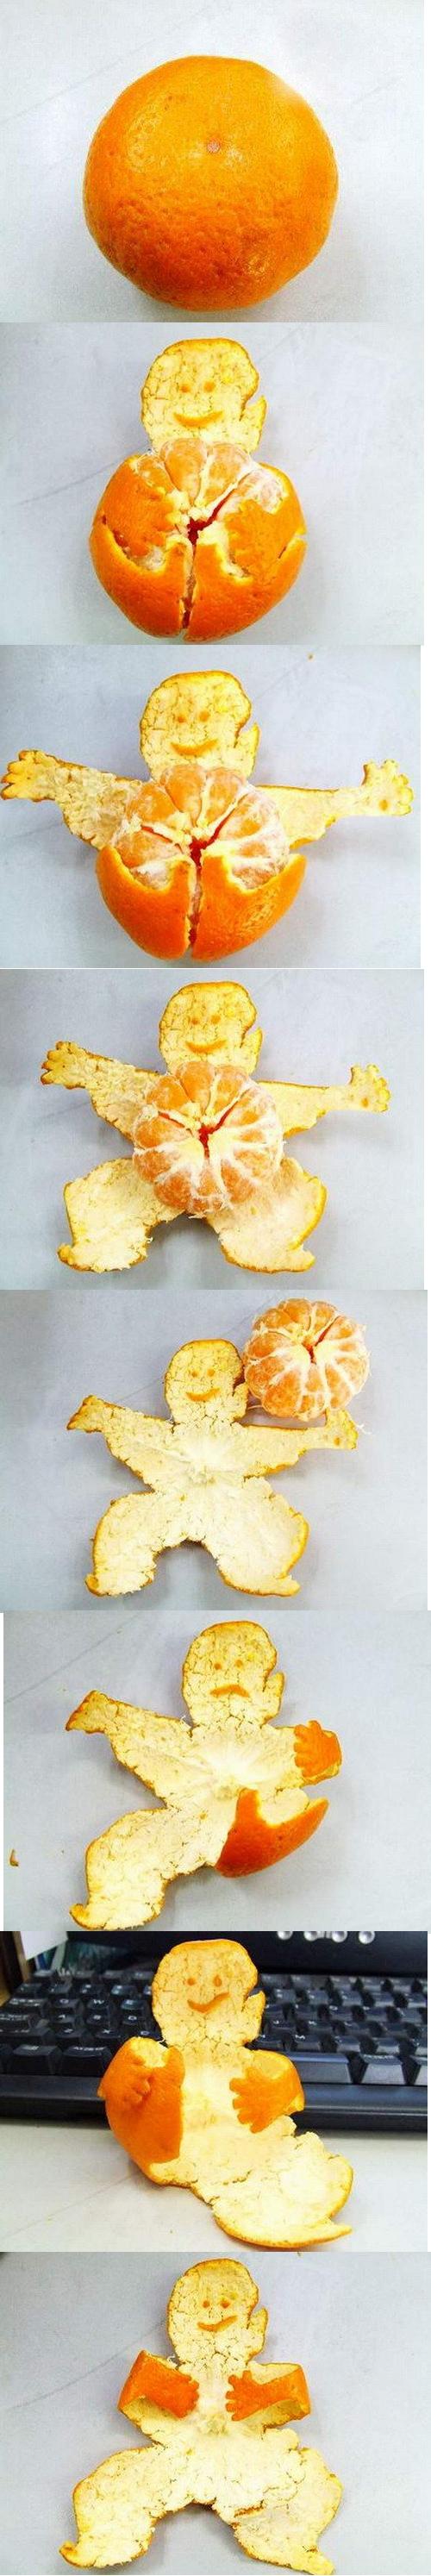 Haciendo formas con la piel de una mandarina